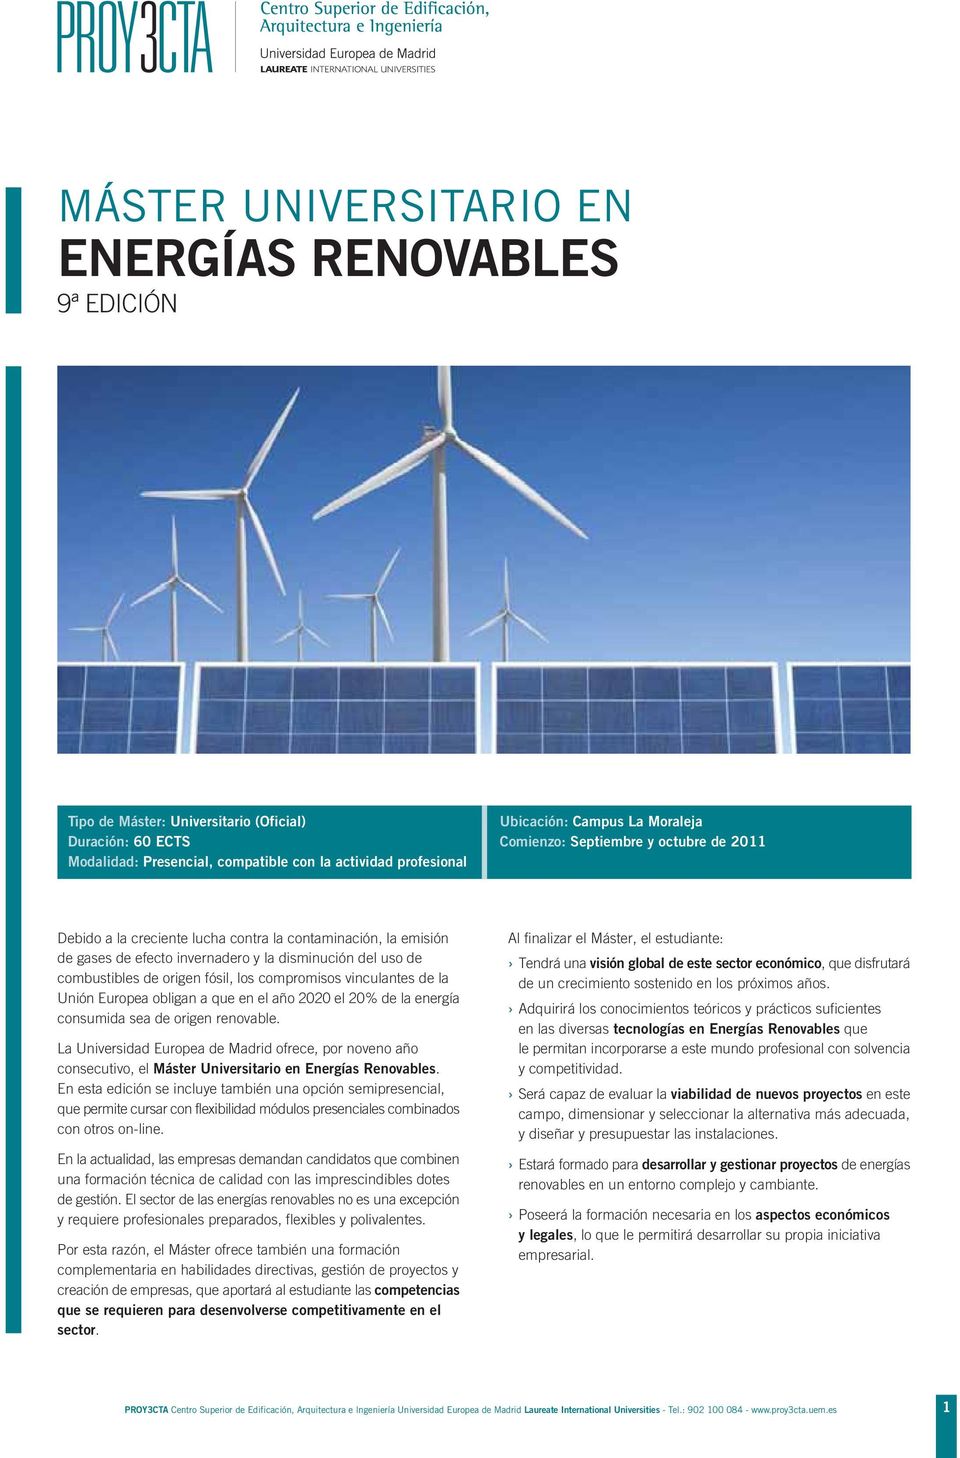 fósil, los compromisos vinculantes de la Unión Europea obligan a que en el año 2020 el 20% de la energía consumida sea de origen renovable.